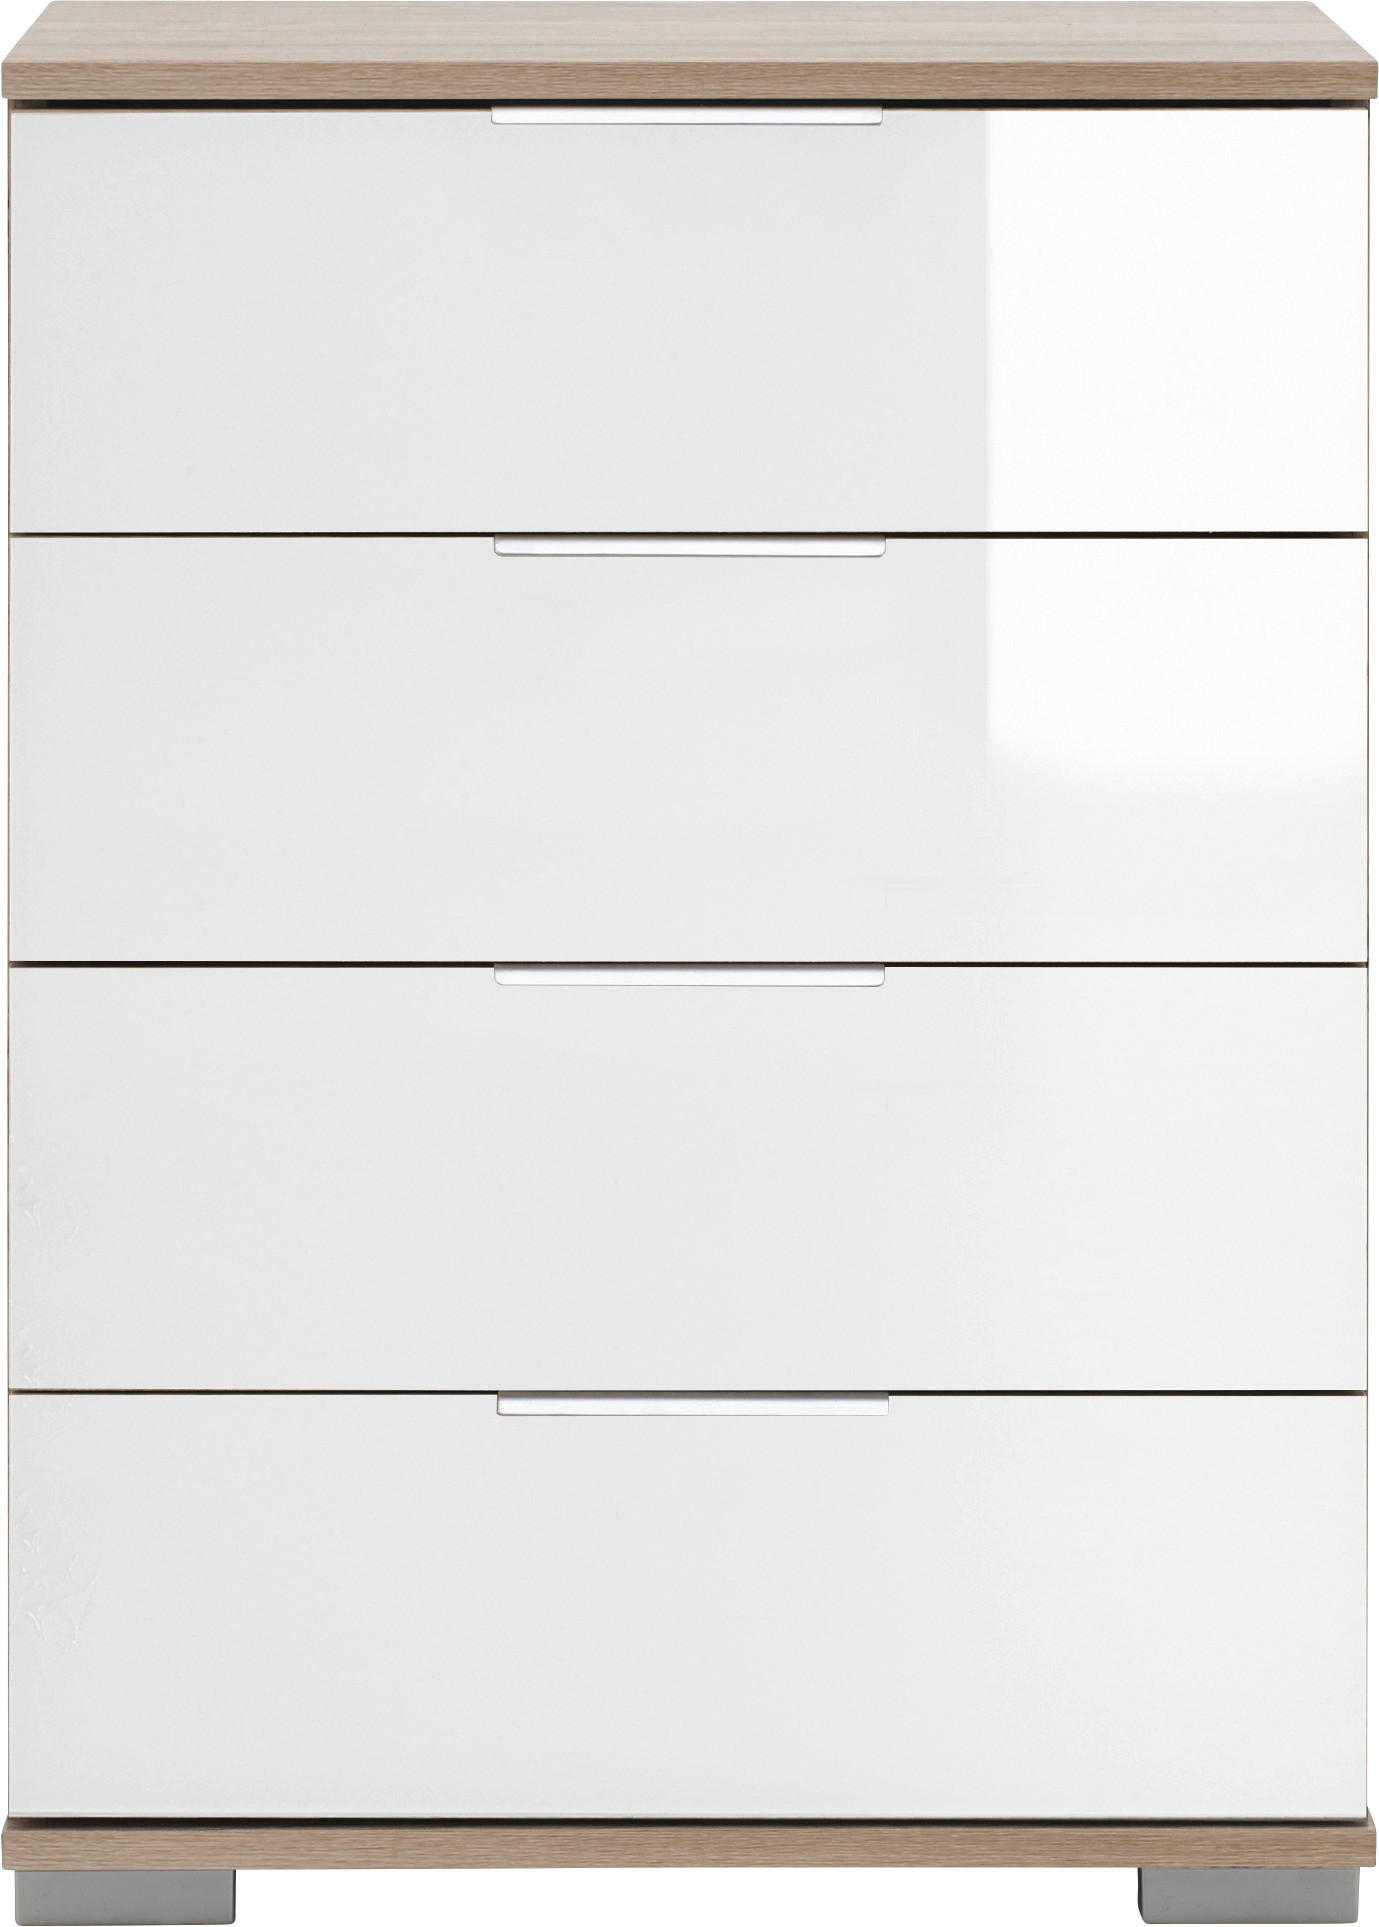 NACHTSCHRANK Weiß, Eichefarben  - Eichefarben/Alufarben, Design, Glas/Kunststoff (52/74/38cm) - Livetastic